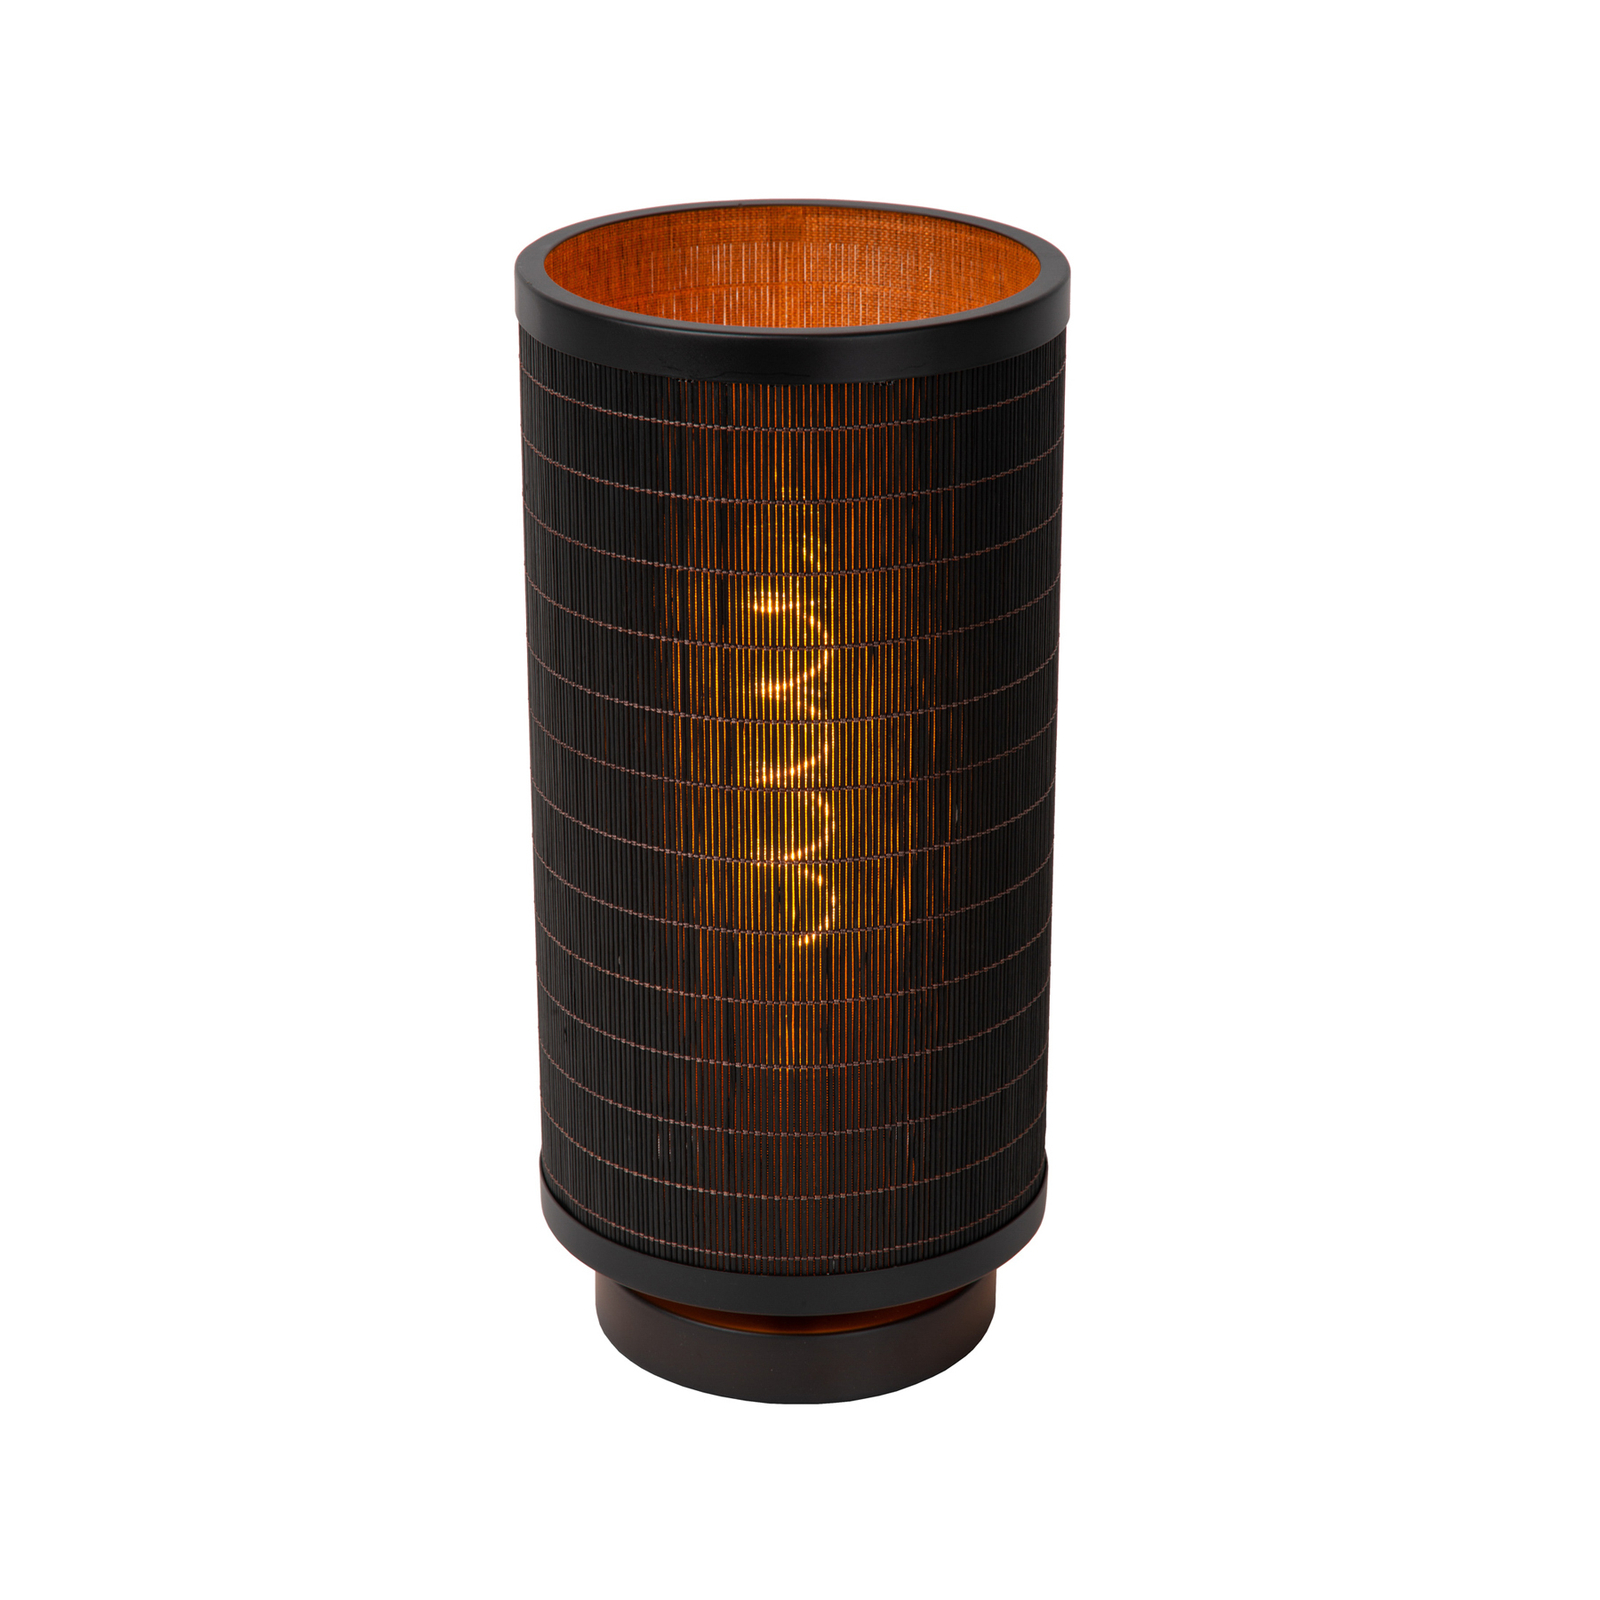 Tagalog stolna lampa od bambusa, crna